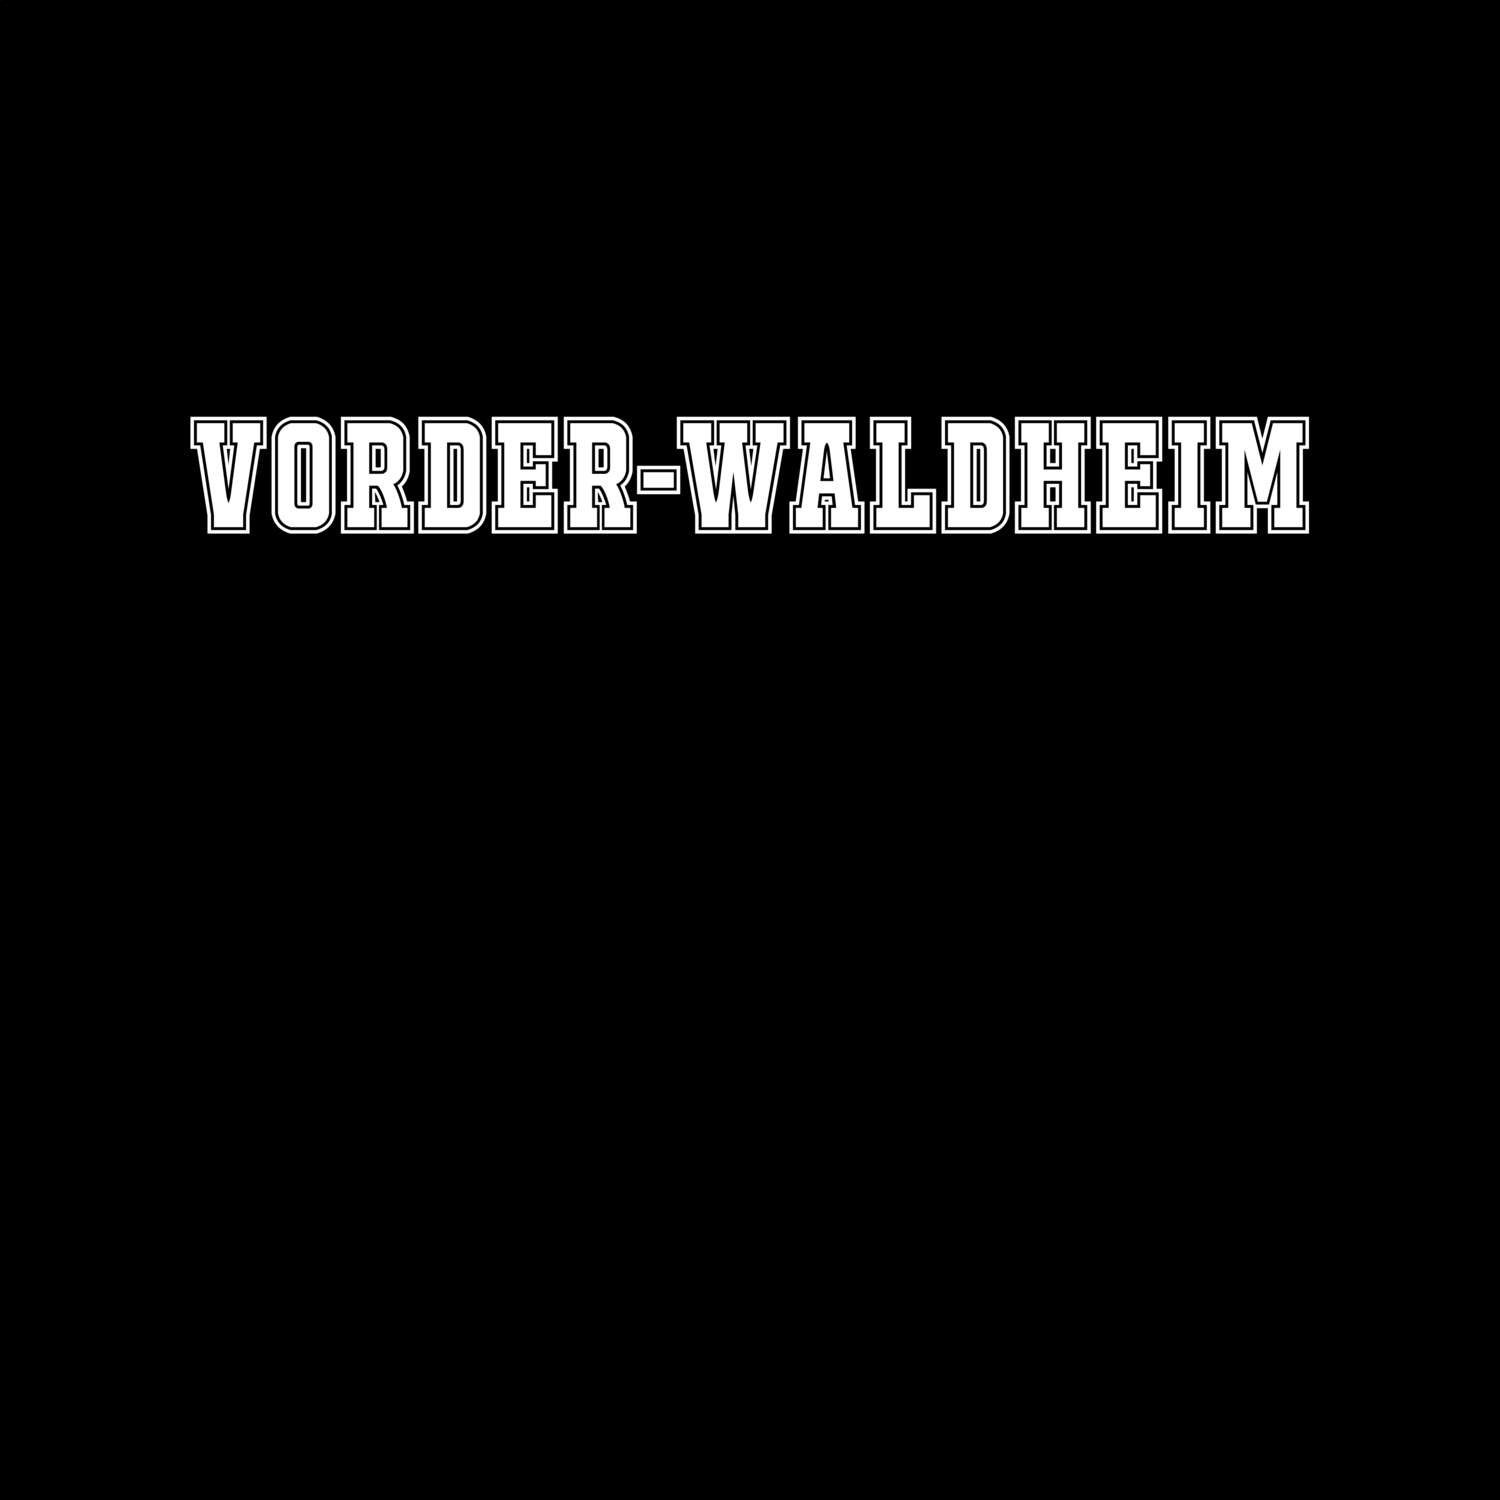 Vorder-Waldheim T-Shirt »Classic«